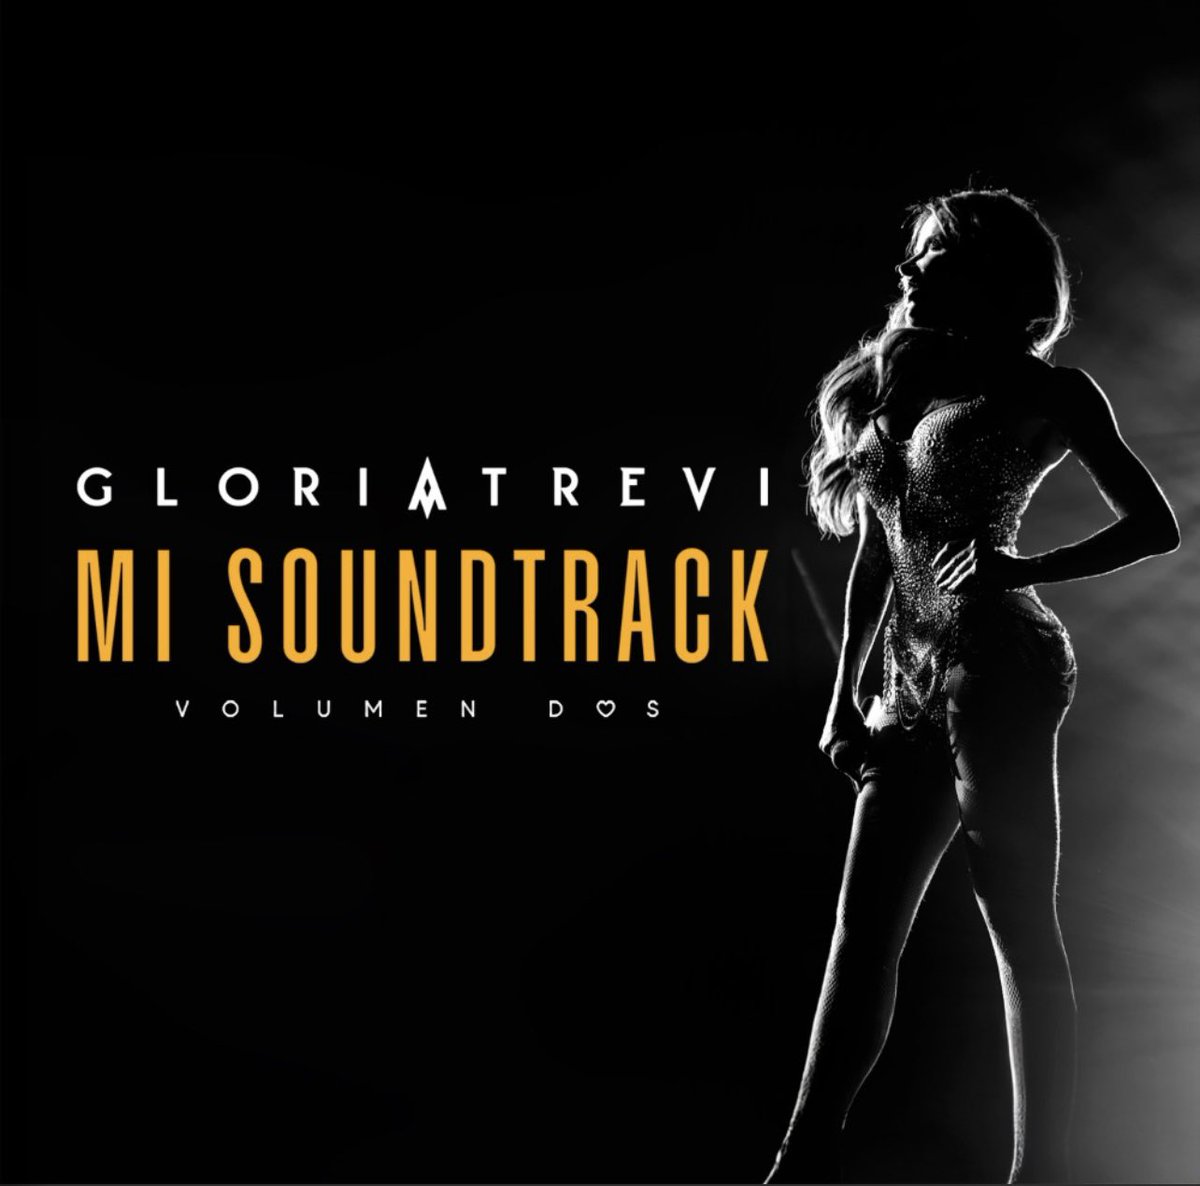 ¡Disfrútalo Ahora! ❤️‍🔥😍 El nuevo álbum de @GloriaTrevi #MiSoundtrack Vol.2 ya está disponible en plataformas digitales 💕 El álbum recopila éxitos de los 90s y nuevos temas que forman parte de la banda sonora de #EllasSoyYo ✨🔥 Incluye éxitos como “Mañana”, “Jack El